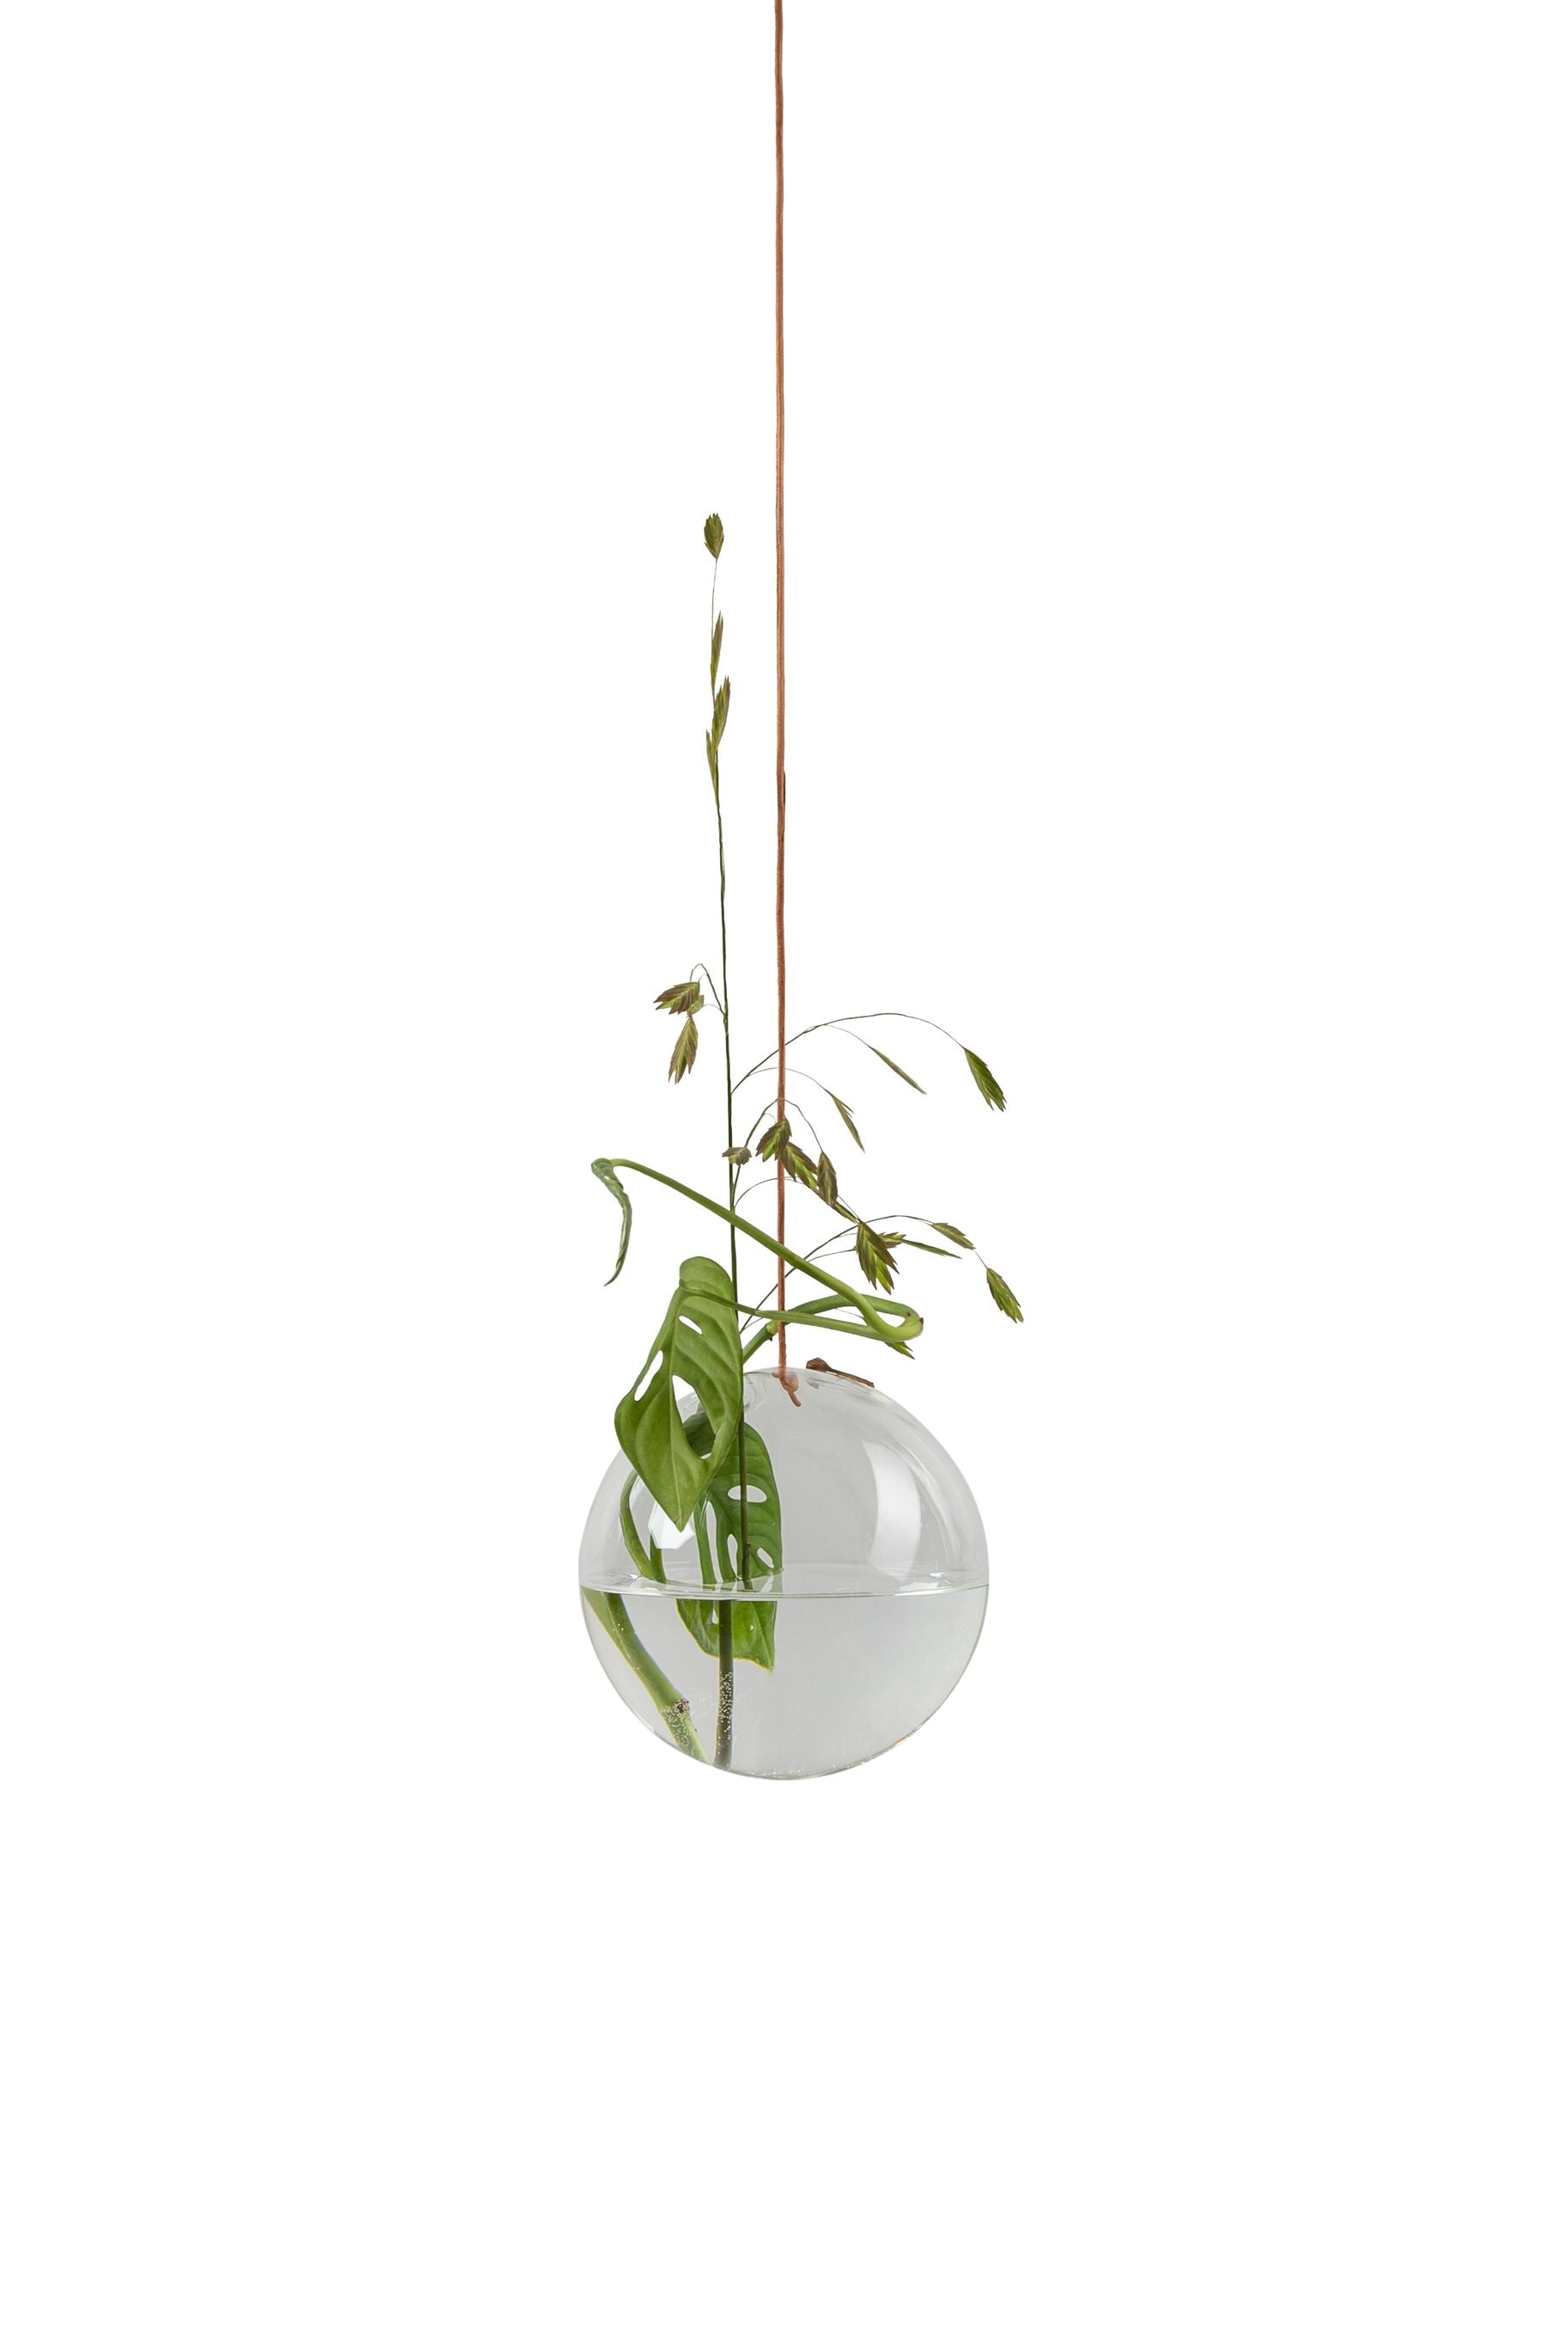 Studio sur la suspension du vase à bulles de fleurs, transparente